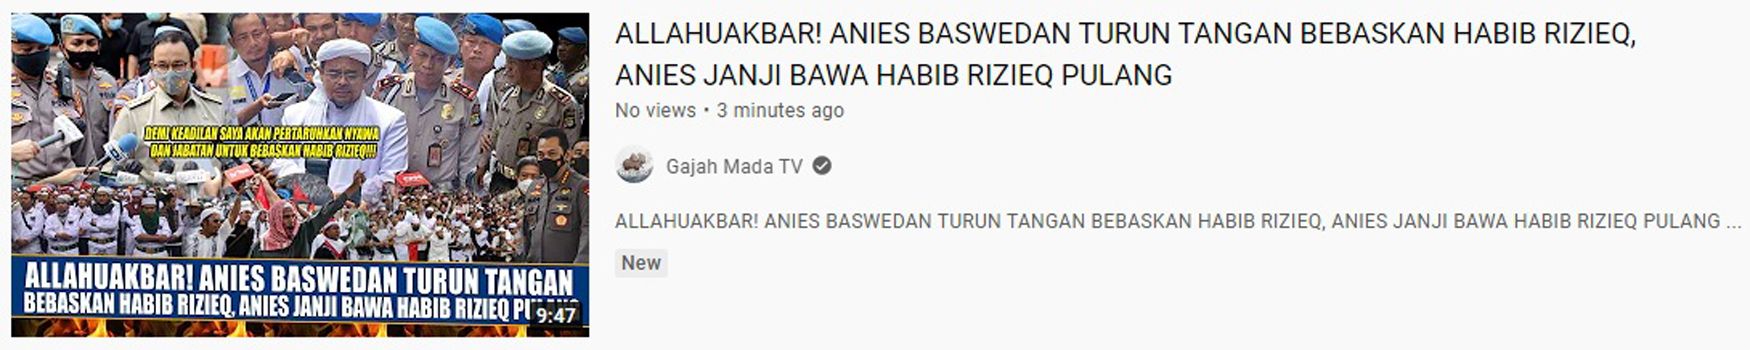 Klaim Unggahan Video Hoax yang menyebut bahwa Anies Baswedan siap berkorban untuk bebaskan Habib Rizieq.